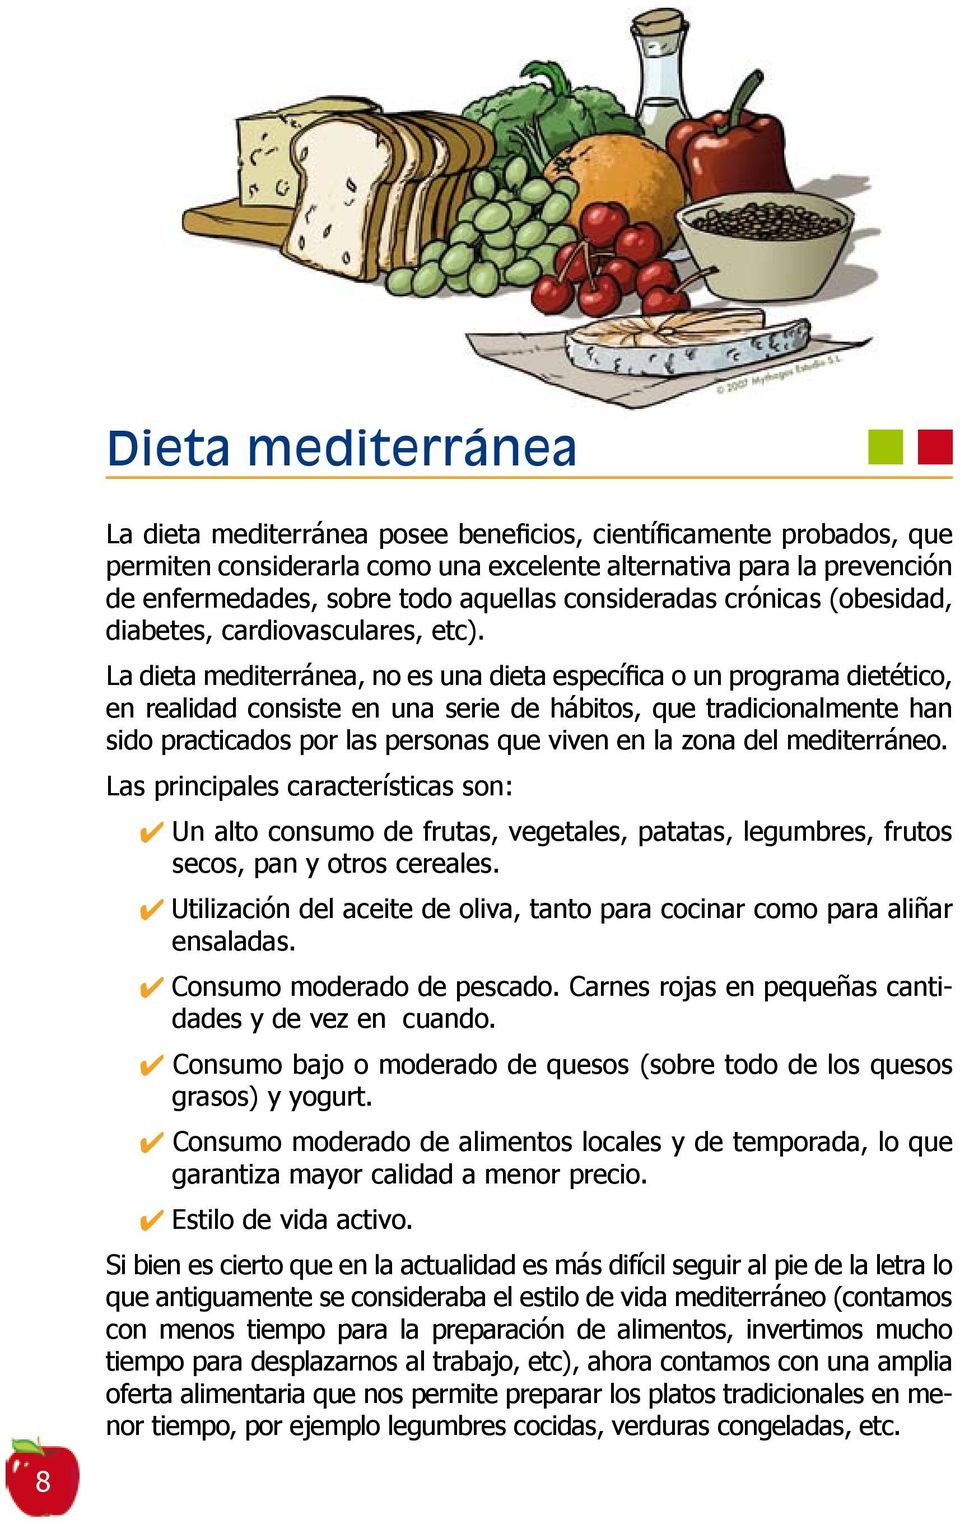 La dieta mediterránea, no es una dieta específica o un programa dietético, en realidad consiste en una serie de hábitos, que tradicionalmente han sido practicados por las personas que viven en la